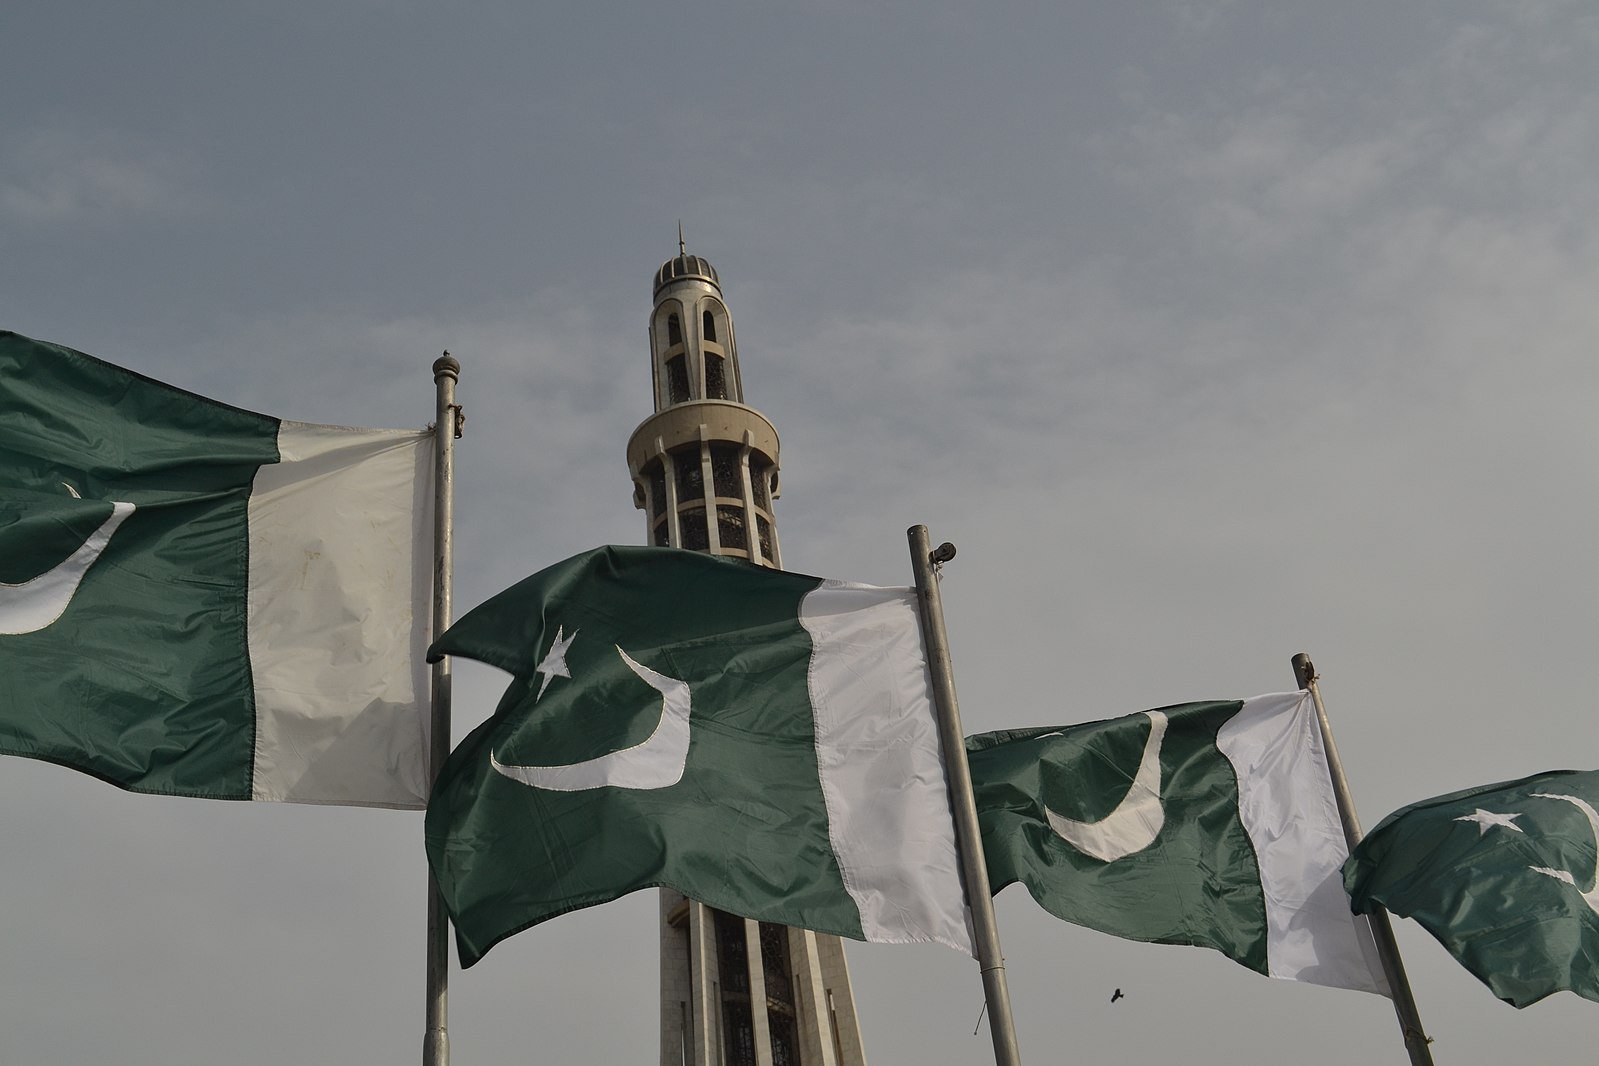 Une caution 8 fois plus chère que le montant maximal autorisé est exigée à un chrétien accusé de blasphème au Pakistan